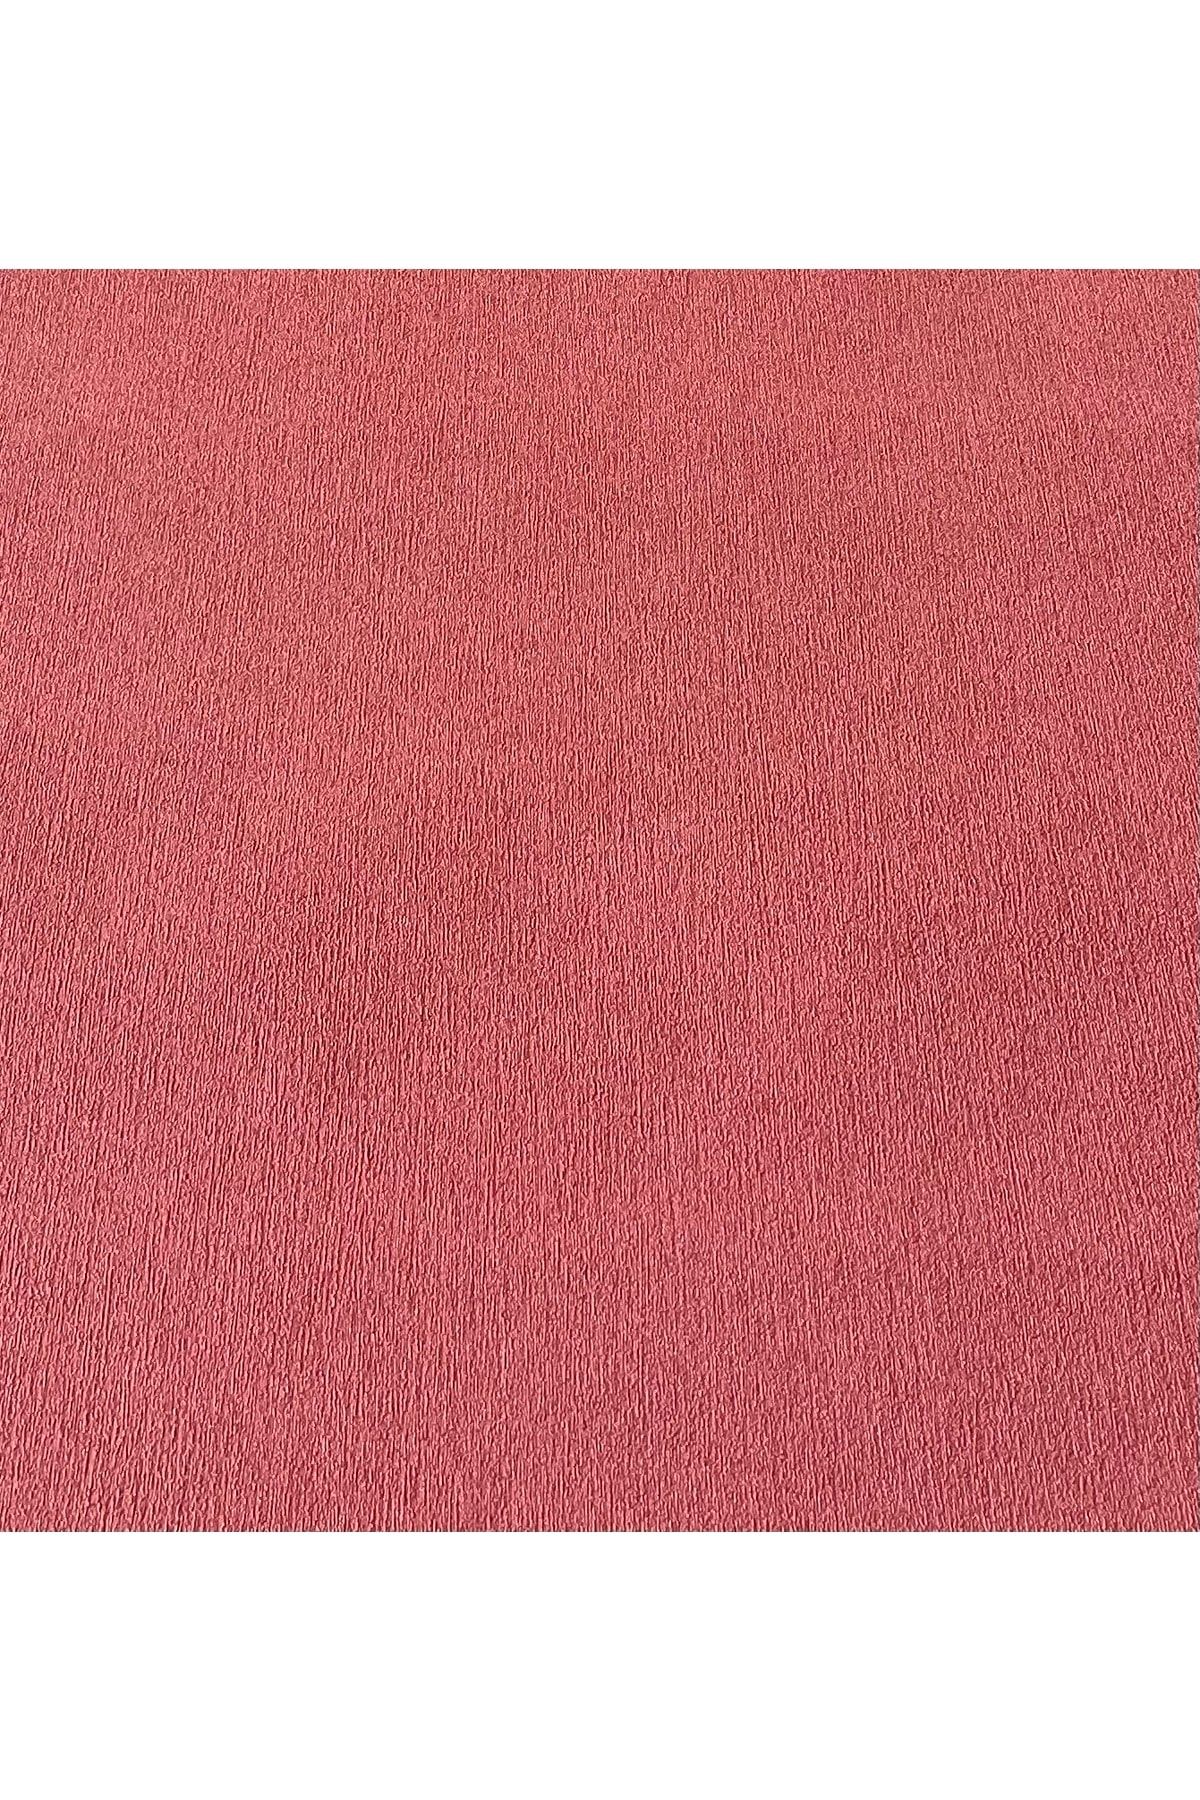 BAŞYAPI DİZAYN Kırmızı Kendinden Desenli Ithal Duvar Kağıdı (5m²)